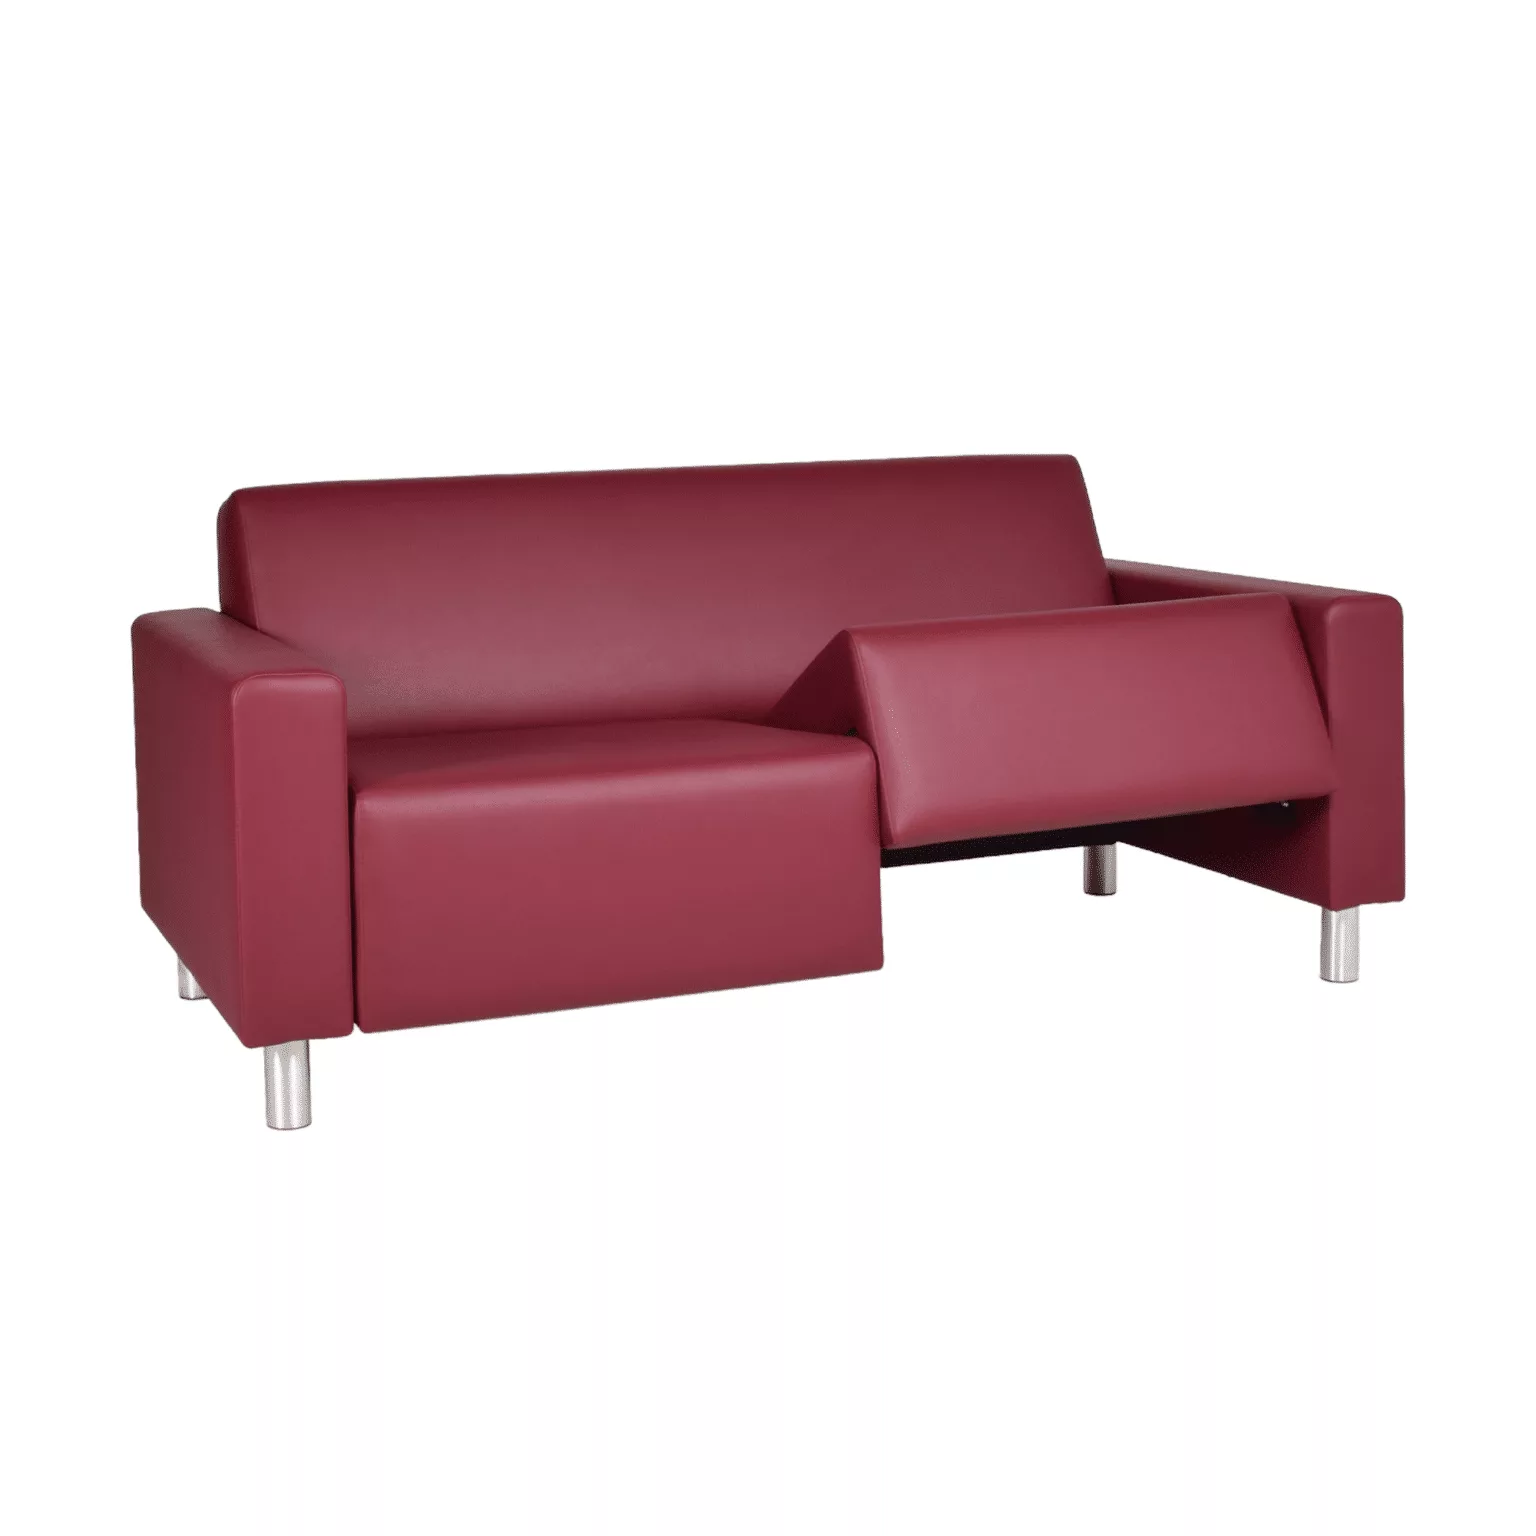 Rode loungebank op zilveren meubelpoten met uitneembare zittingen.